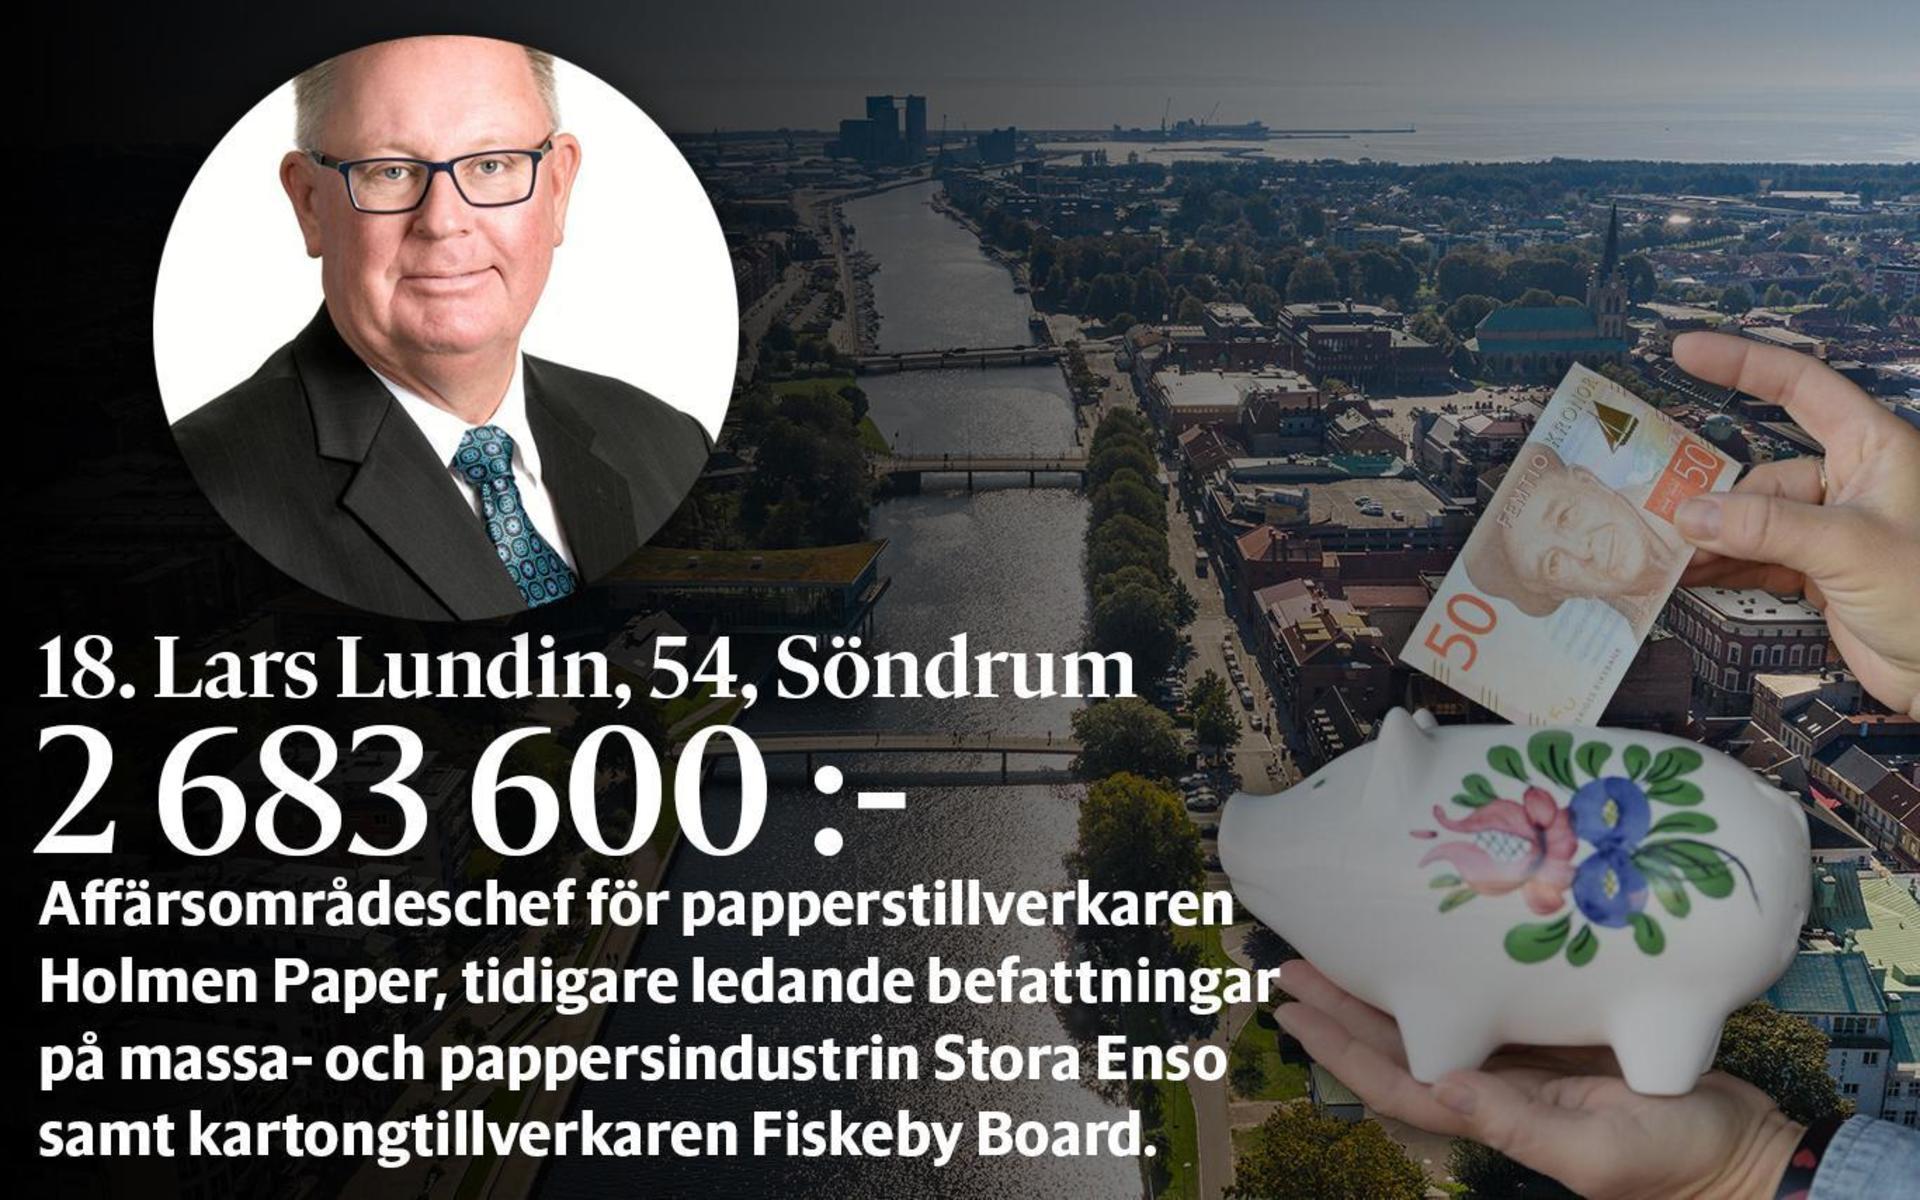 18. Lars Lundin, fastställd förvärvsinkomst på 2 683 600 kronor, placerar sig inte på topp 100-listan i den totala inkomstligan i Halmstad där inkomst av kapital också räknas med.